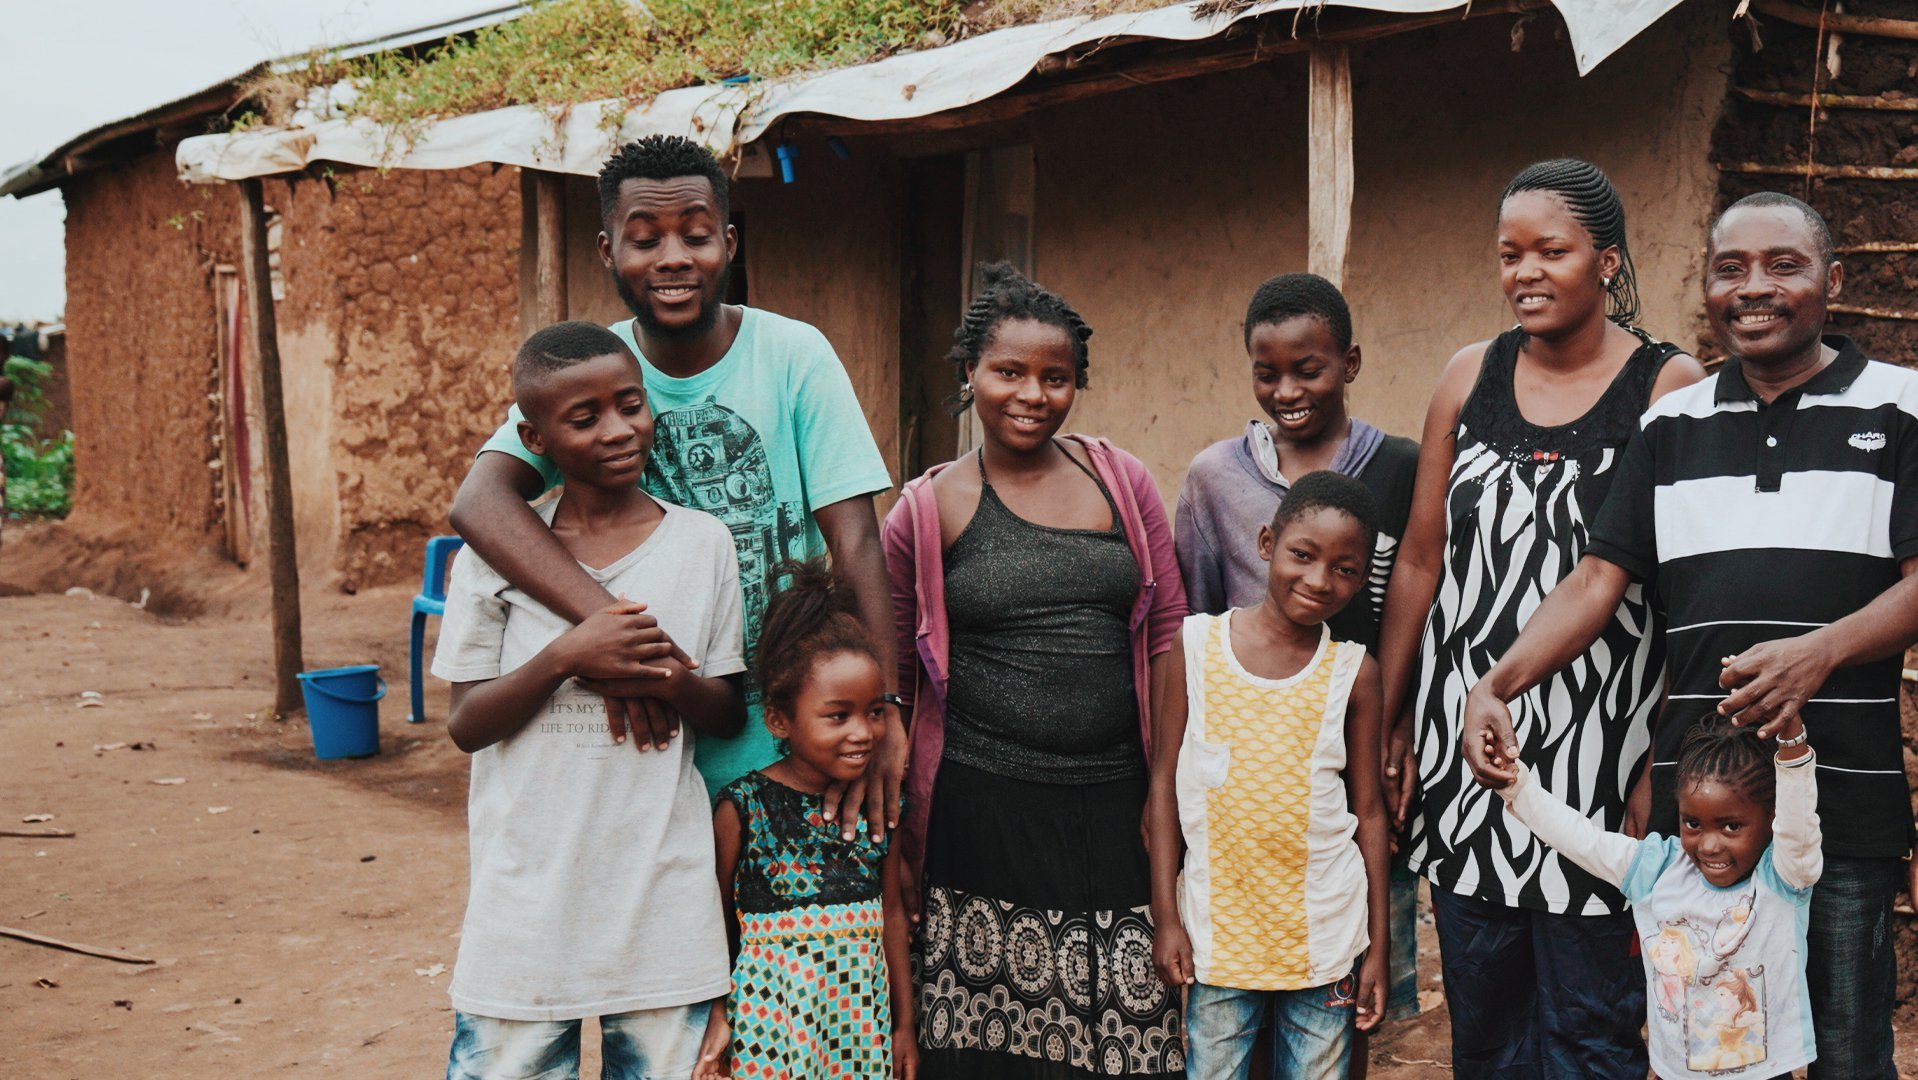 Nelson en zijn familie vinden weer hoop na hun vlucht naar Oeganda